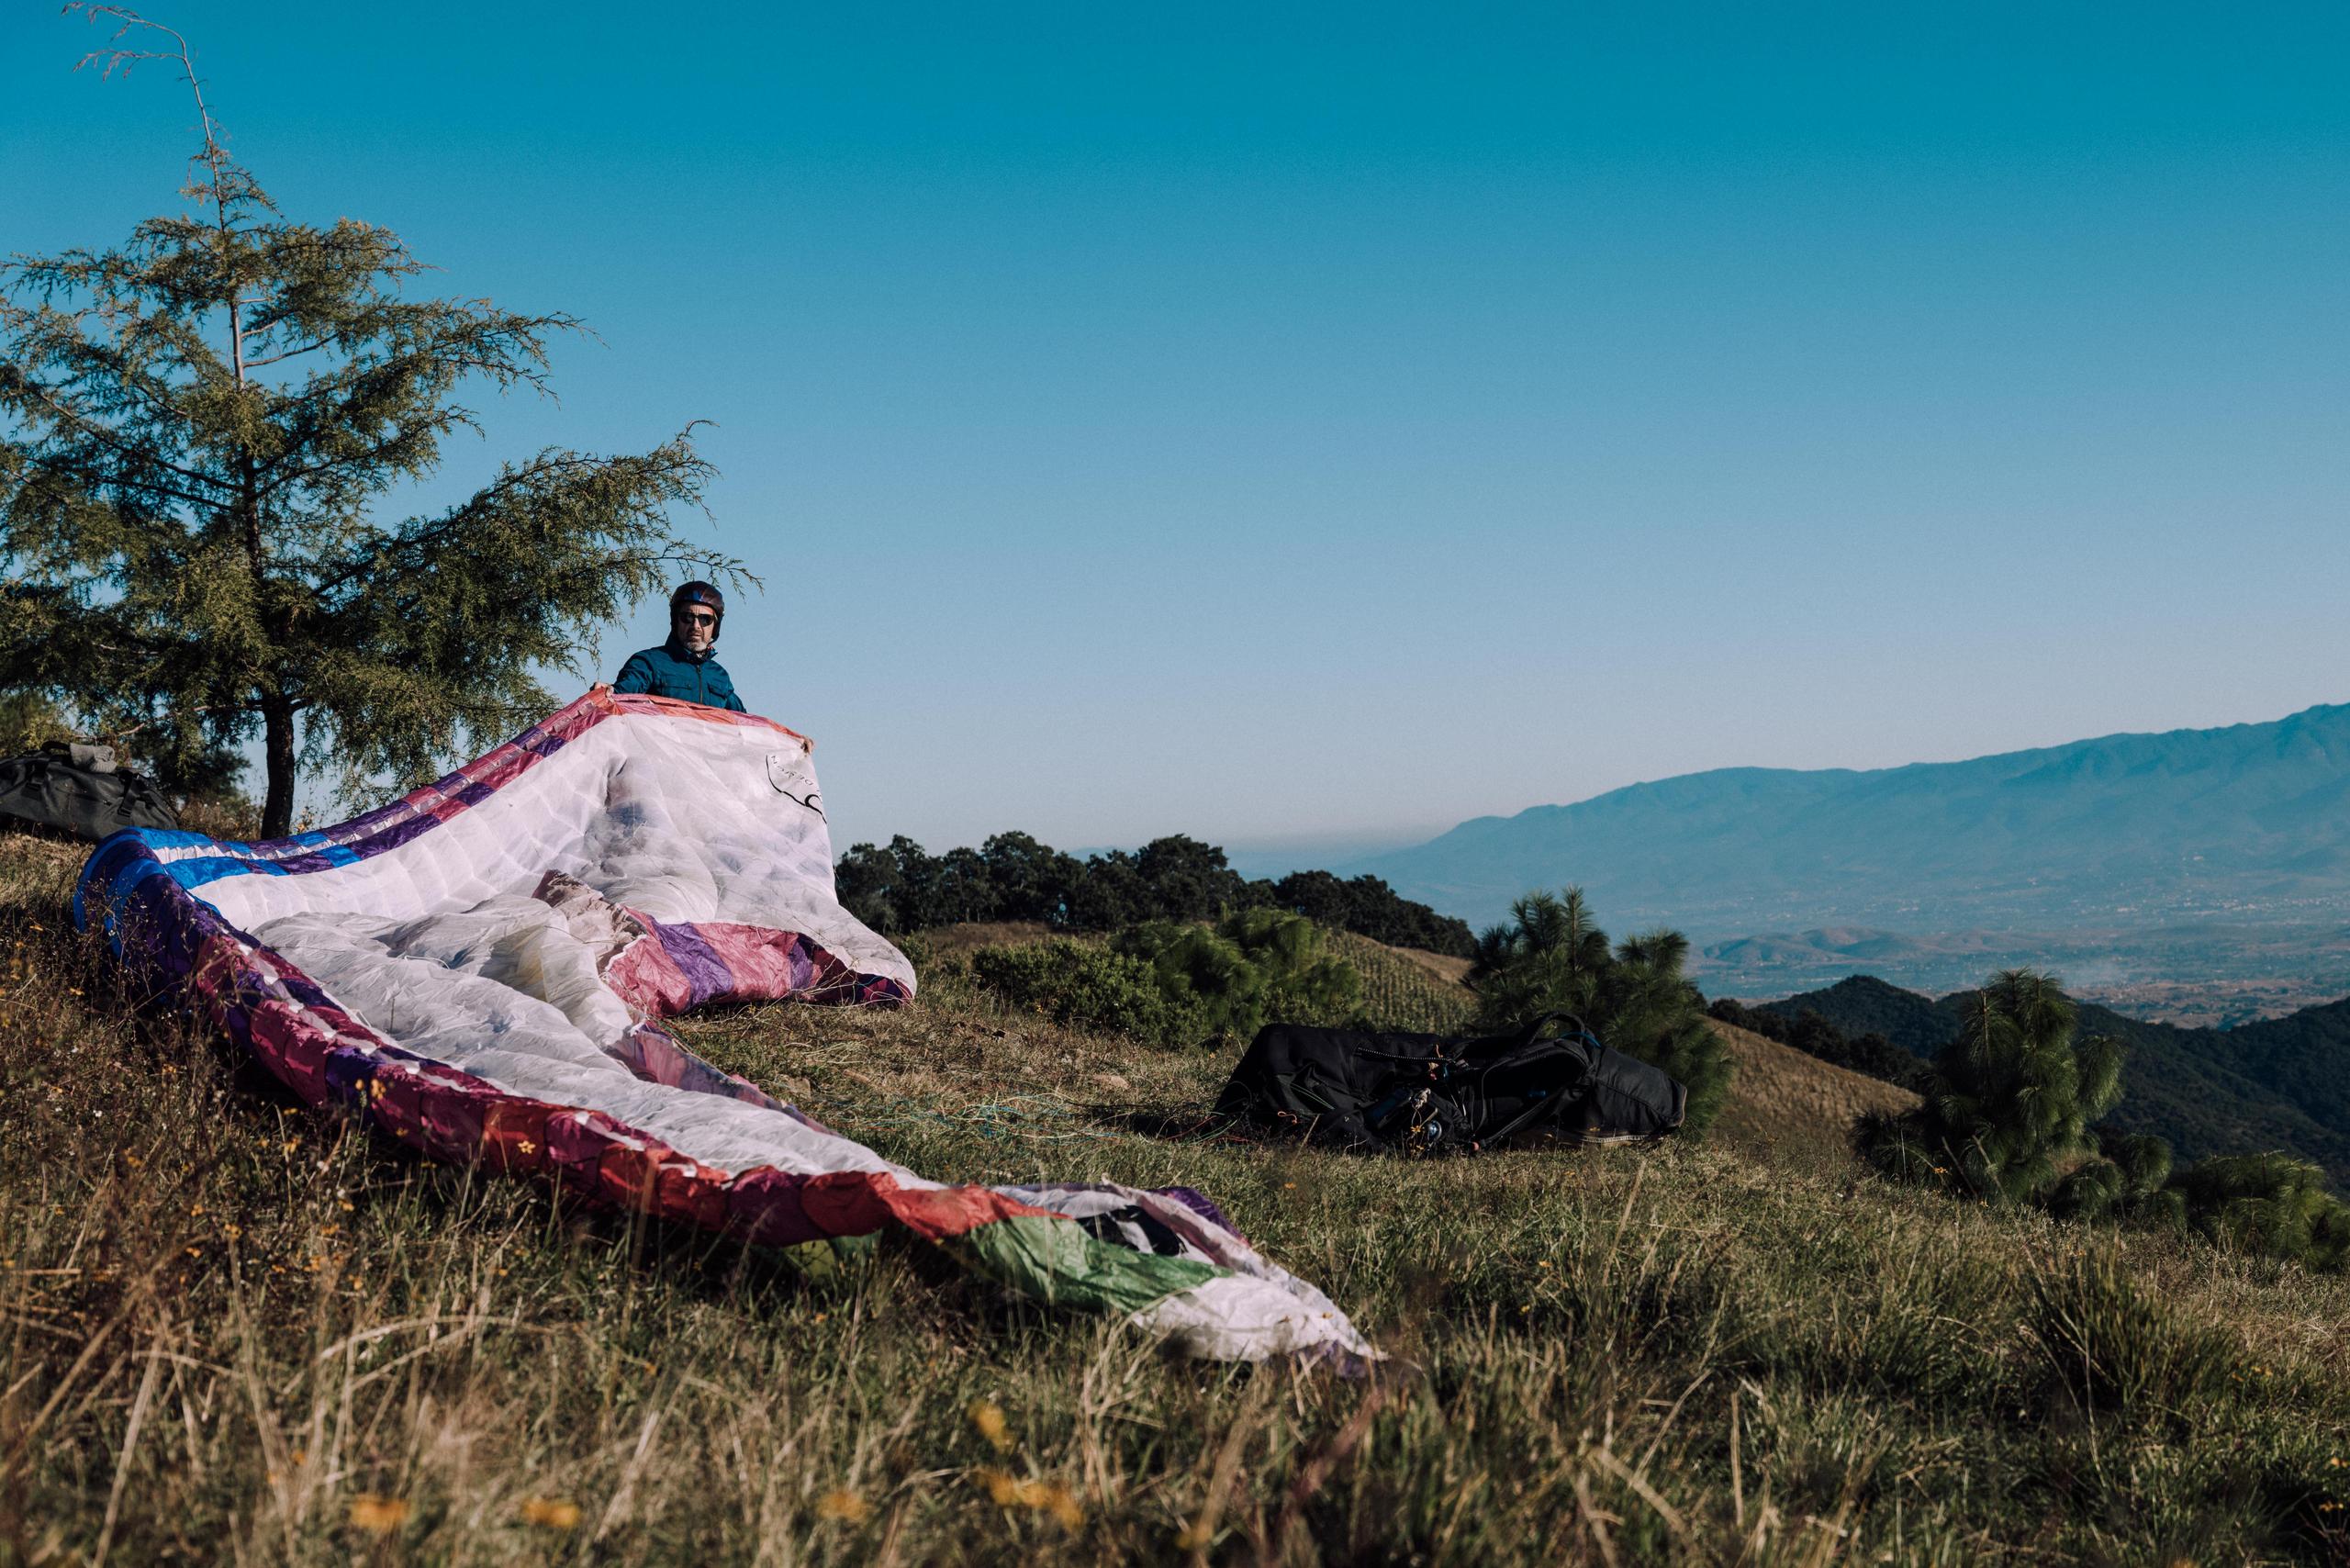 Man unfurling paraglide on mountainside near Oaxaca, Mexico 